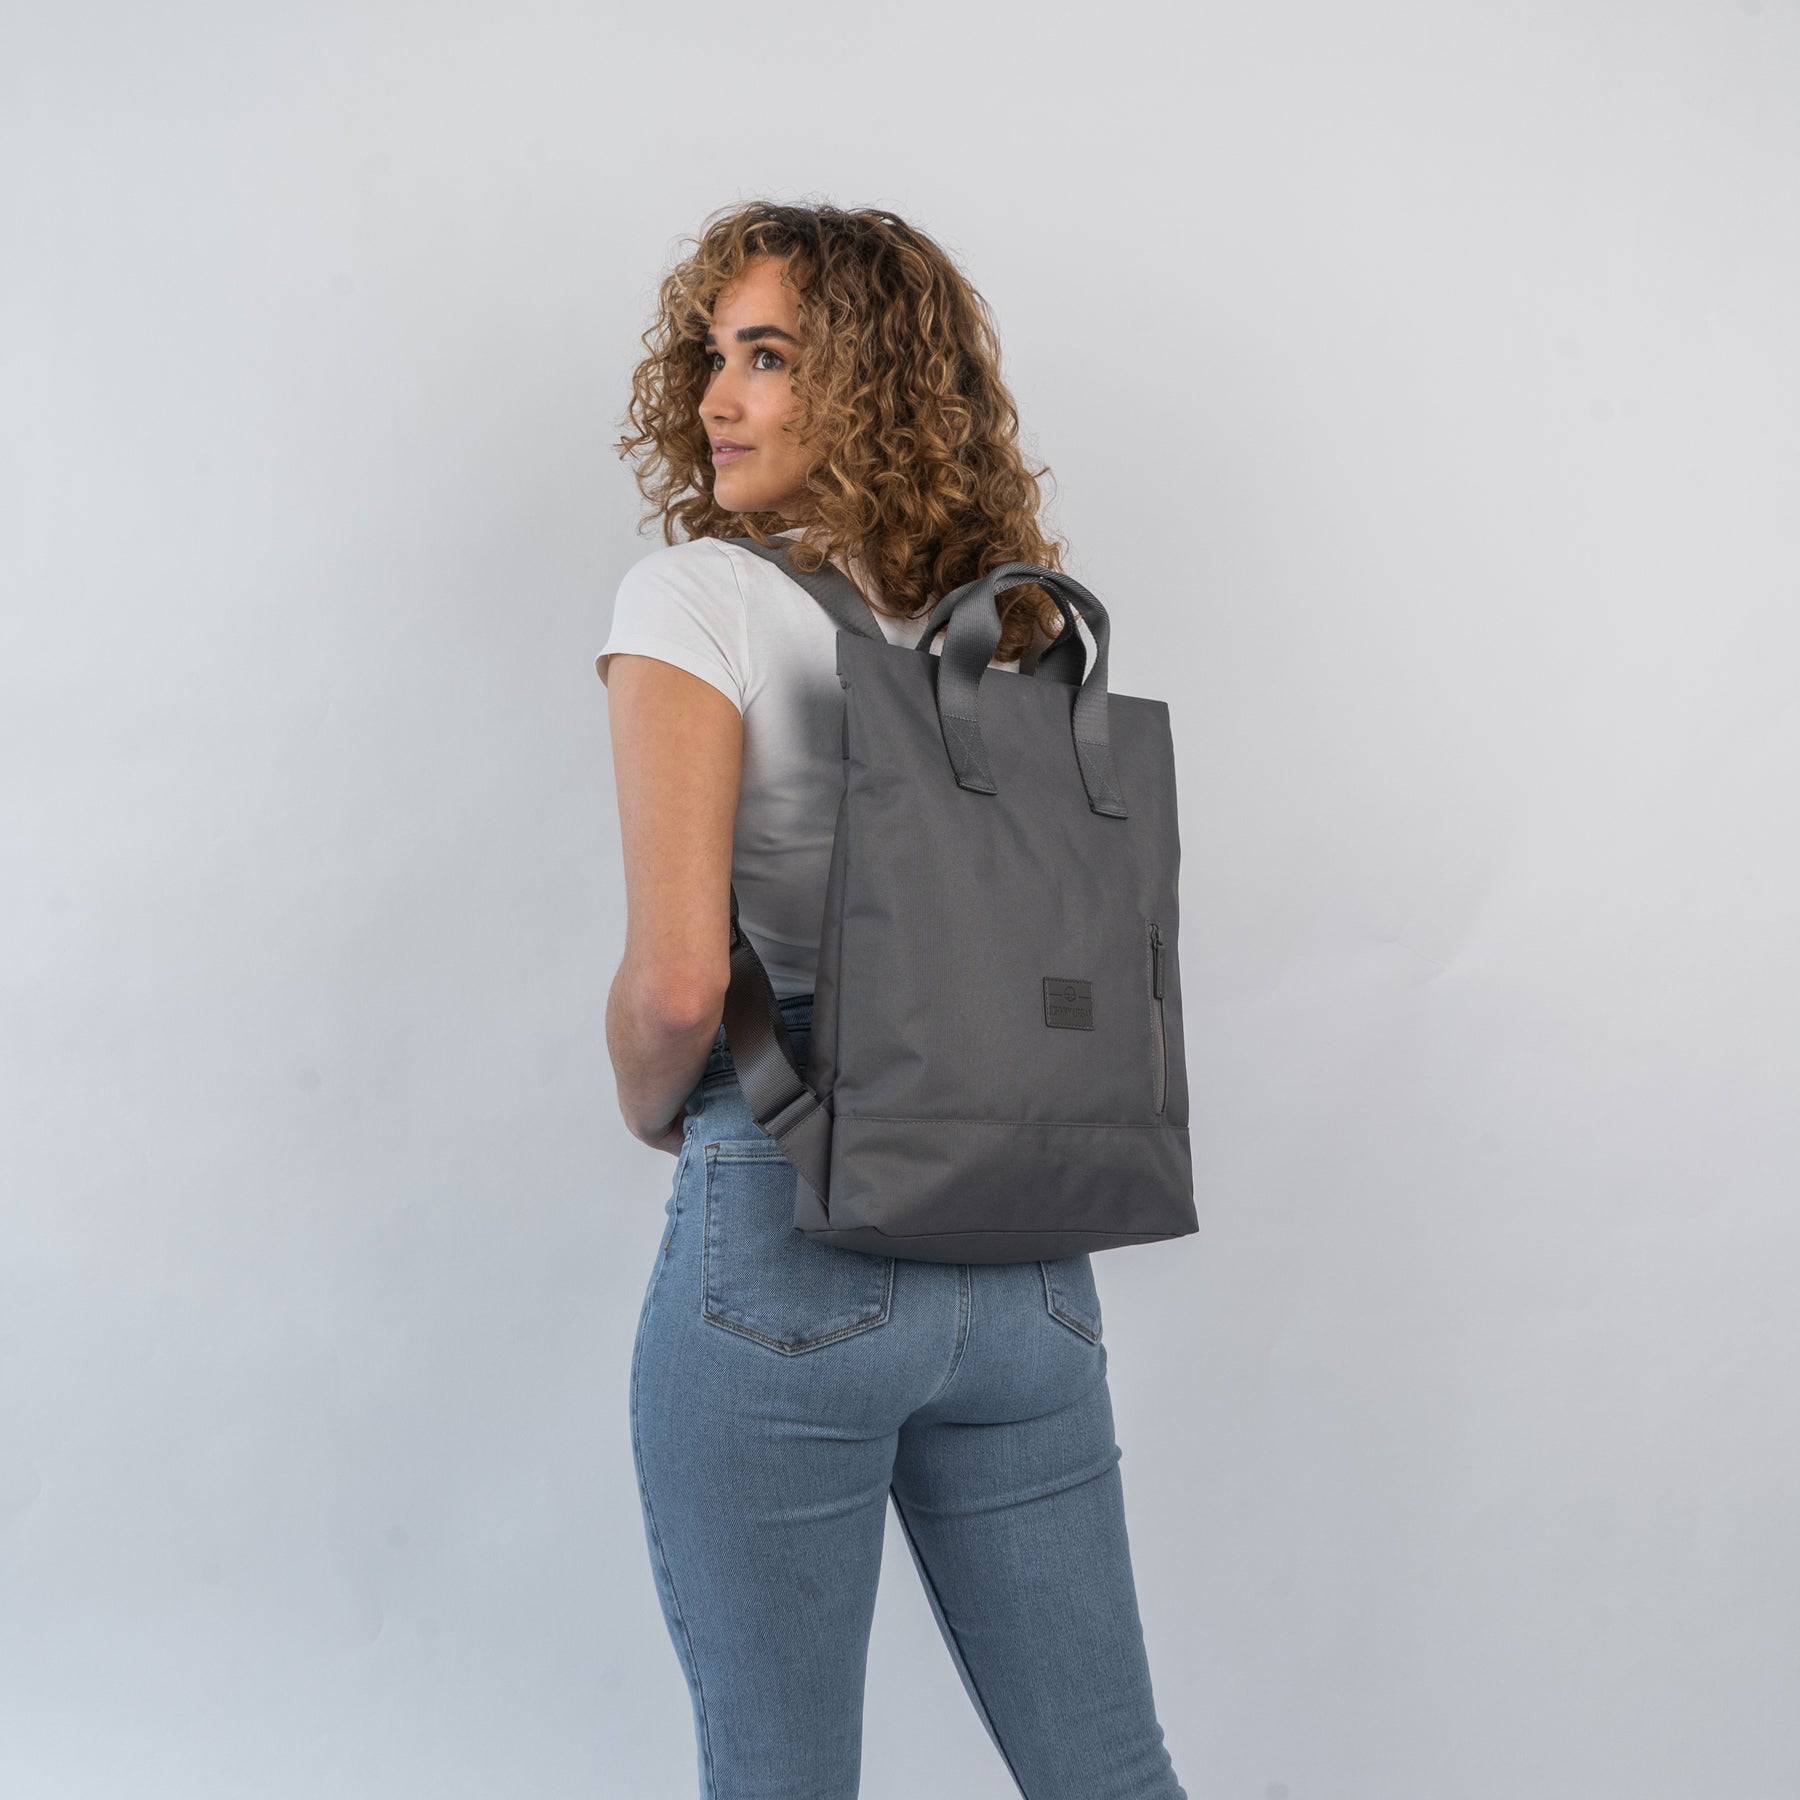 Backpack Bag "Ivy" 